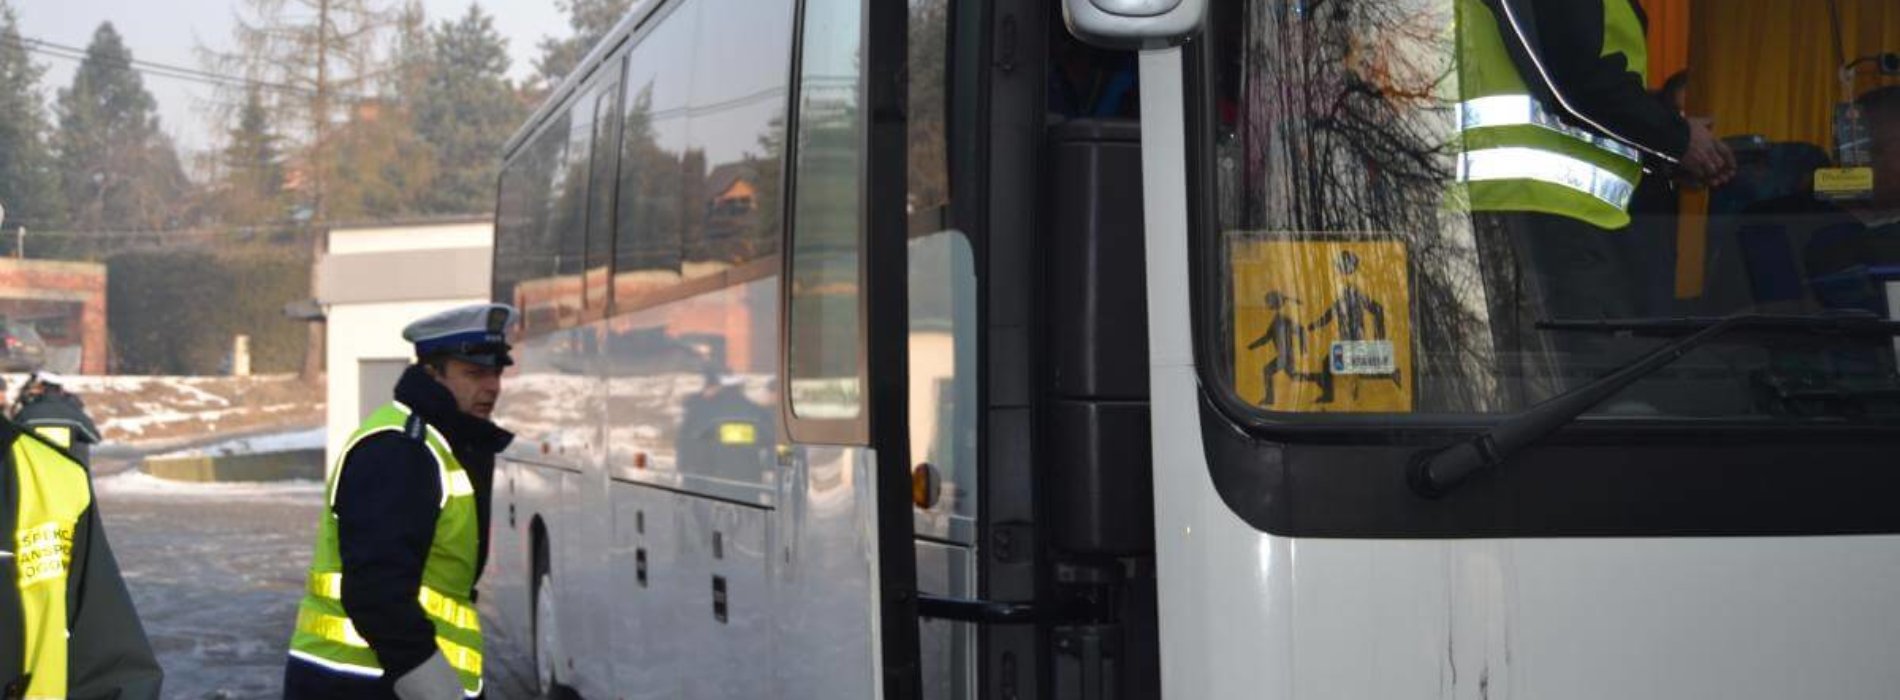 Nietrzeźwy kierujący autobusem chciał przewozić dzieci na wycieczkę